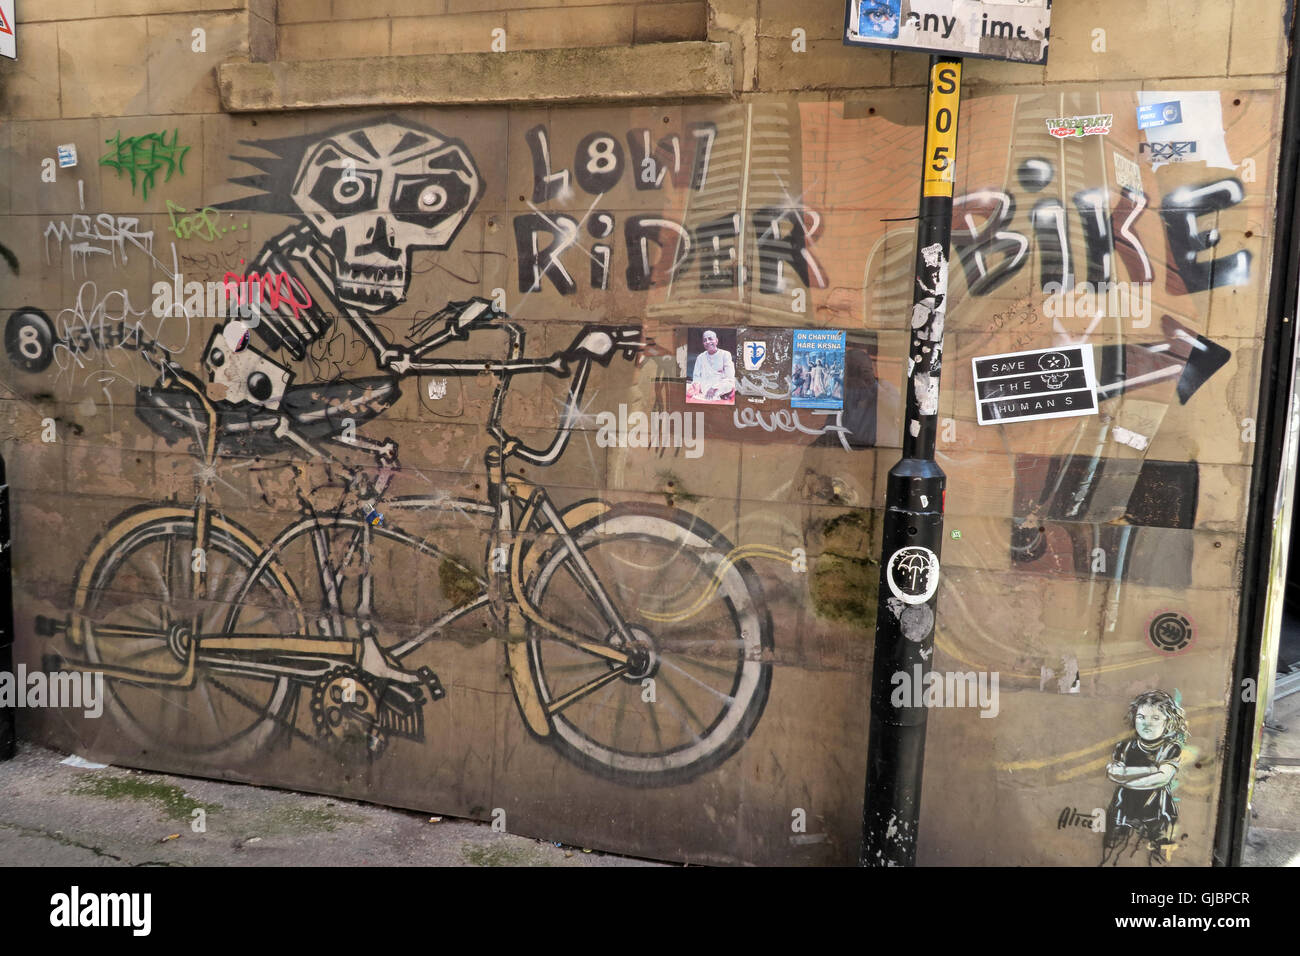 NQ Street art & stencil, scheletro in bicicletta, equitazione, nel quartiere settentrionale, Manchester, Inghilterra nord-occidentale, REGNO UNITO, M1 Foto Stock